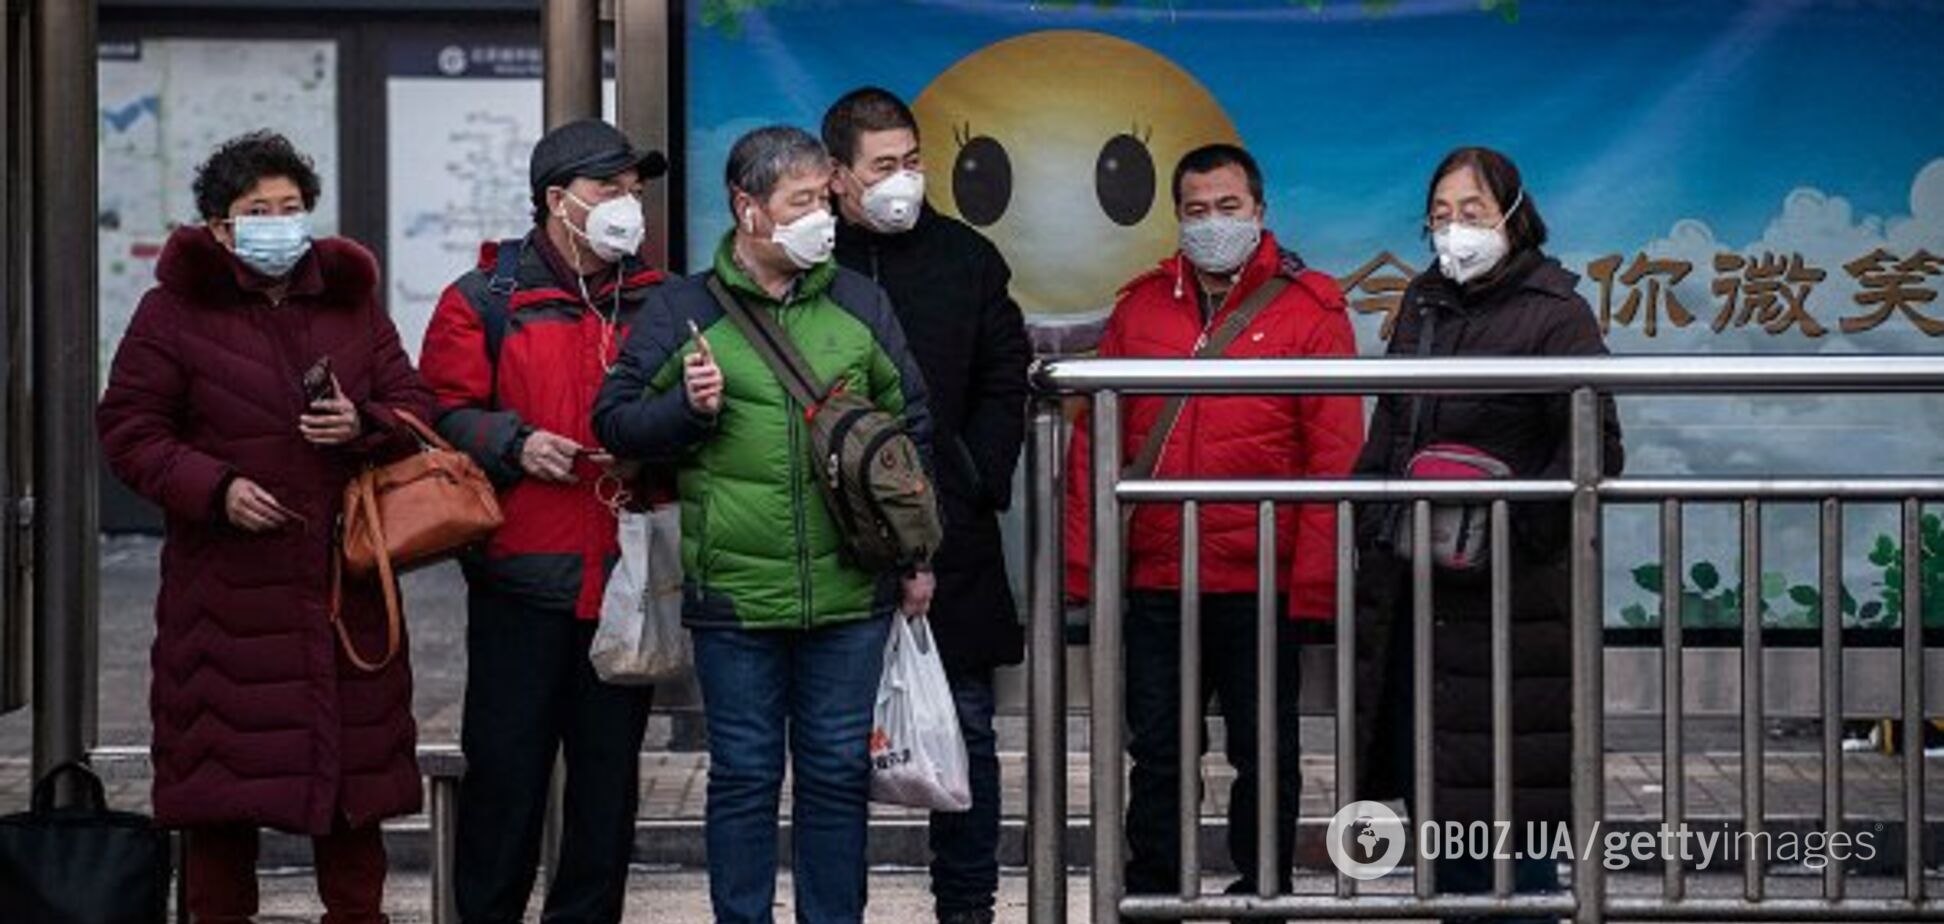  В Китае обнародовали пугающую статистику смертей от коронавируса